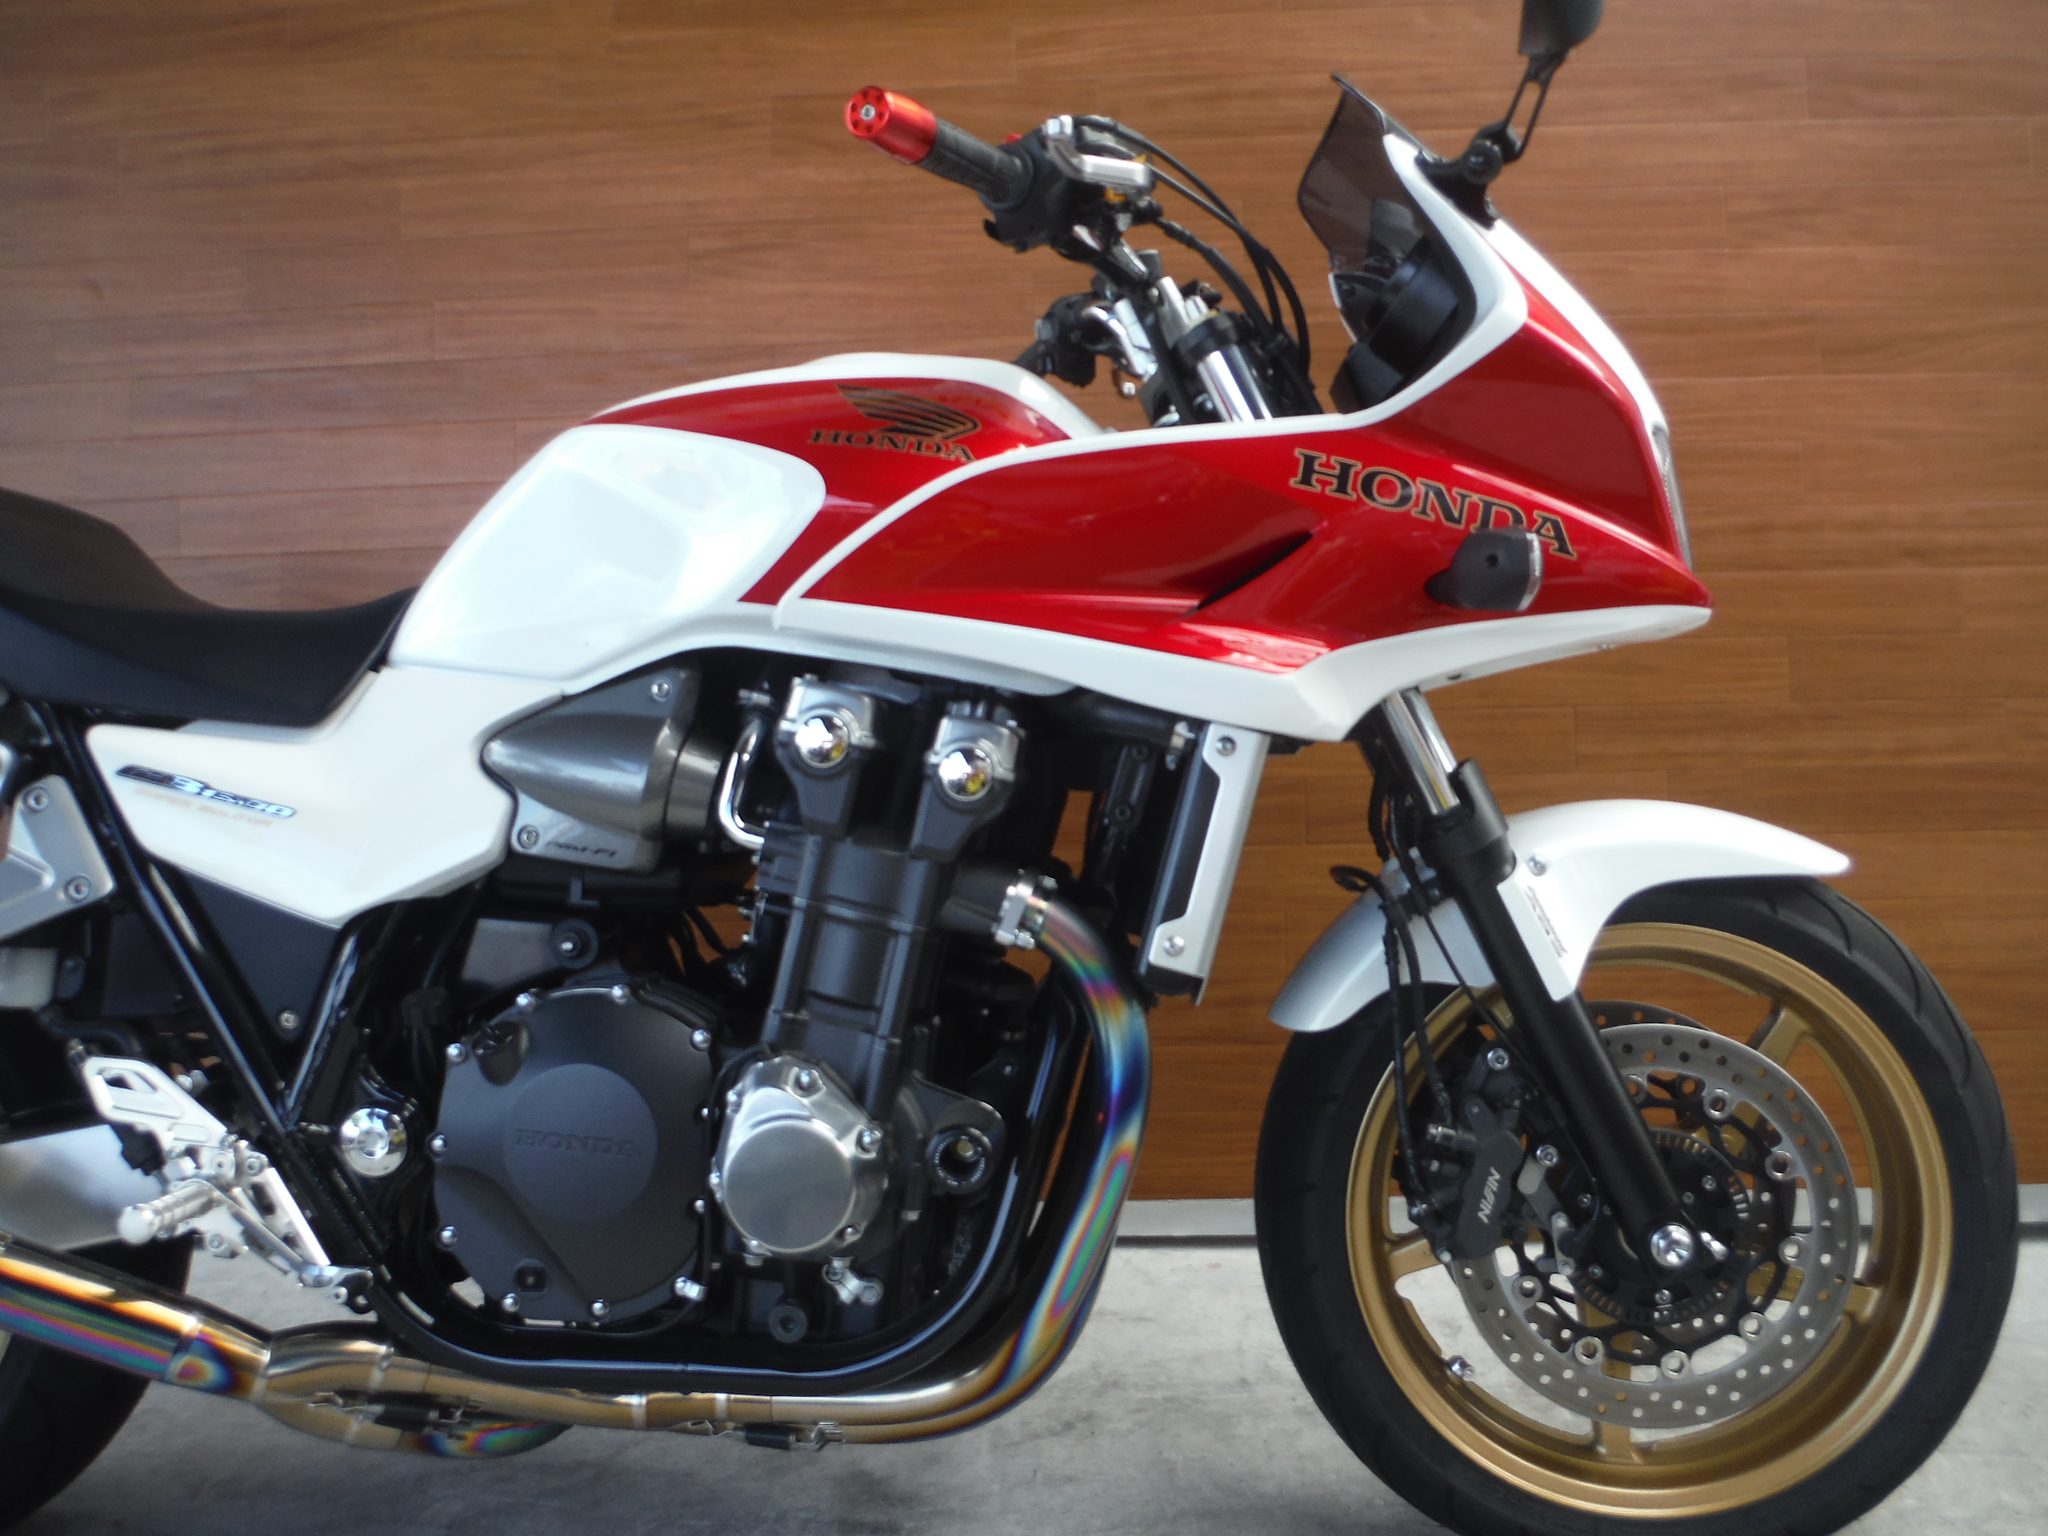 熊本中古車バイク情報 ホンダ Cb1300sb Abs 1300 11年モデル 赤白 熊本のバイクショップ アール バイクの新車 中古 車販売や買取 レンタルバイクのことならおまかせください